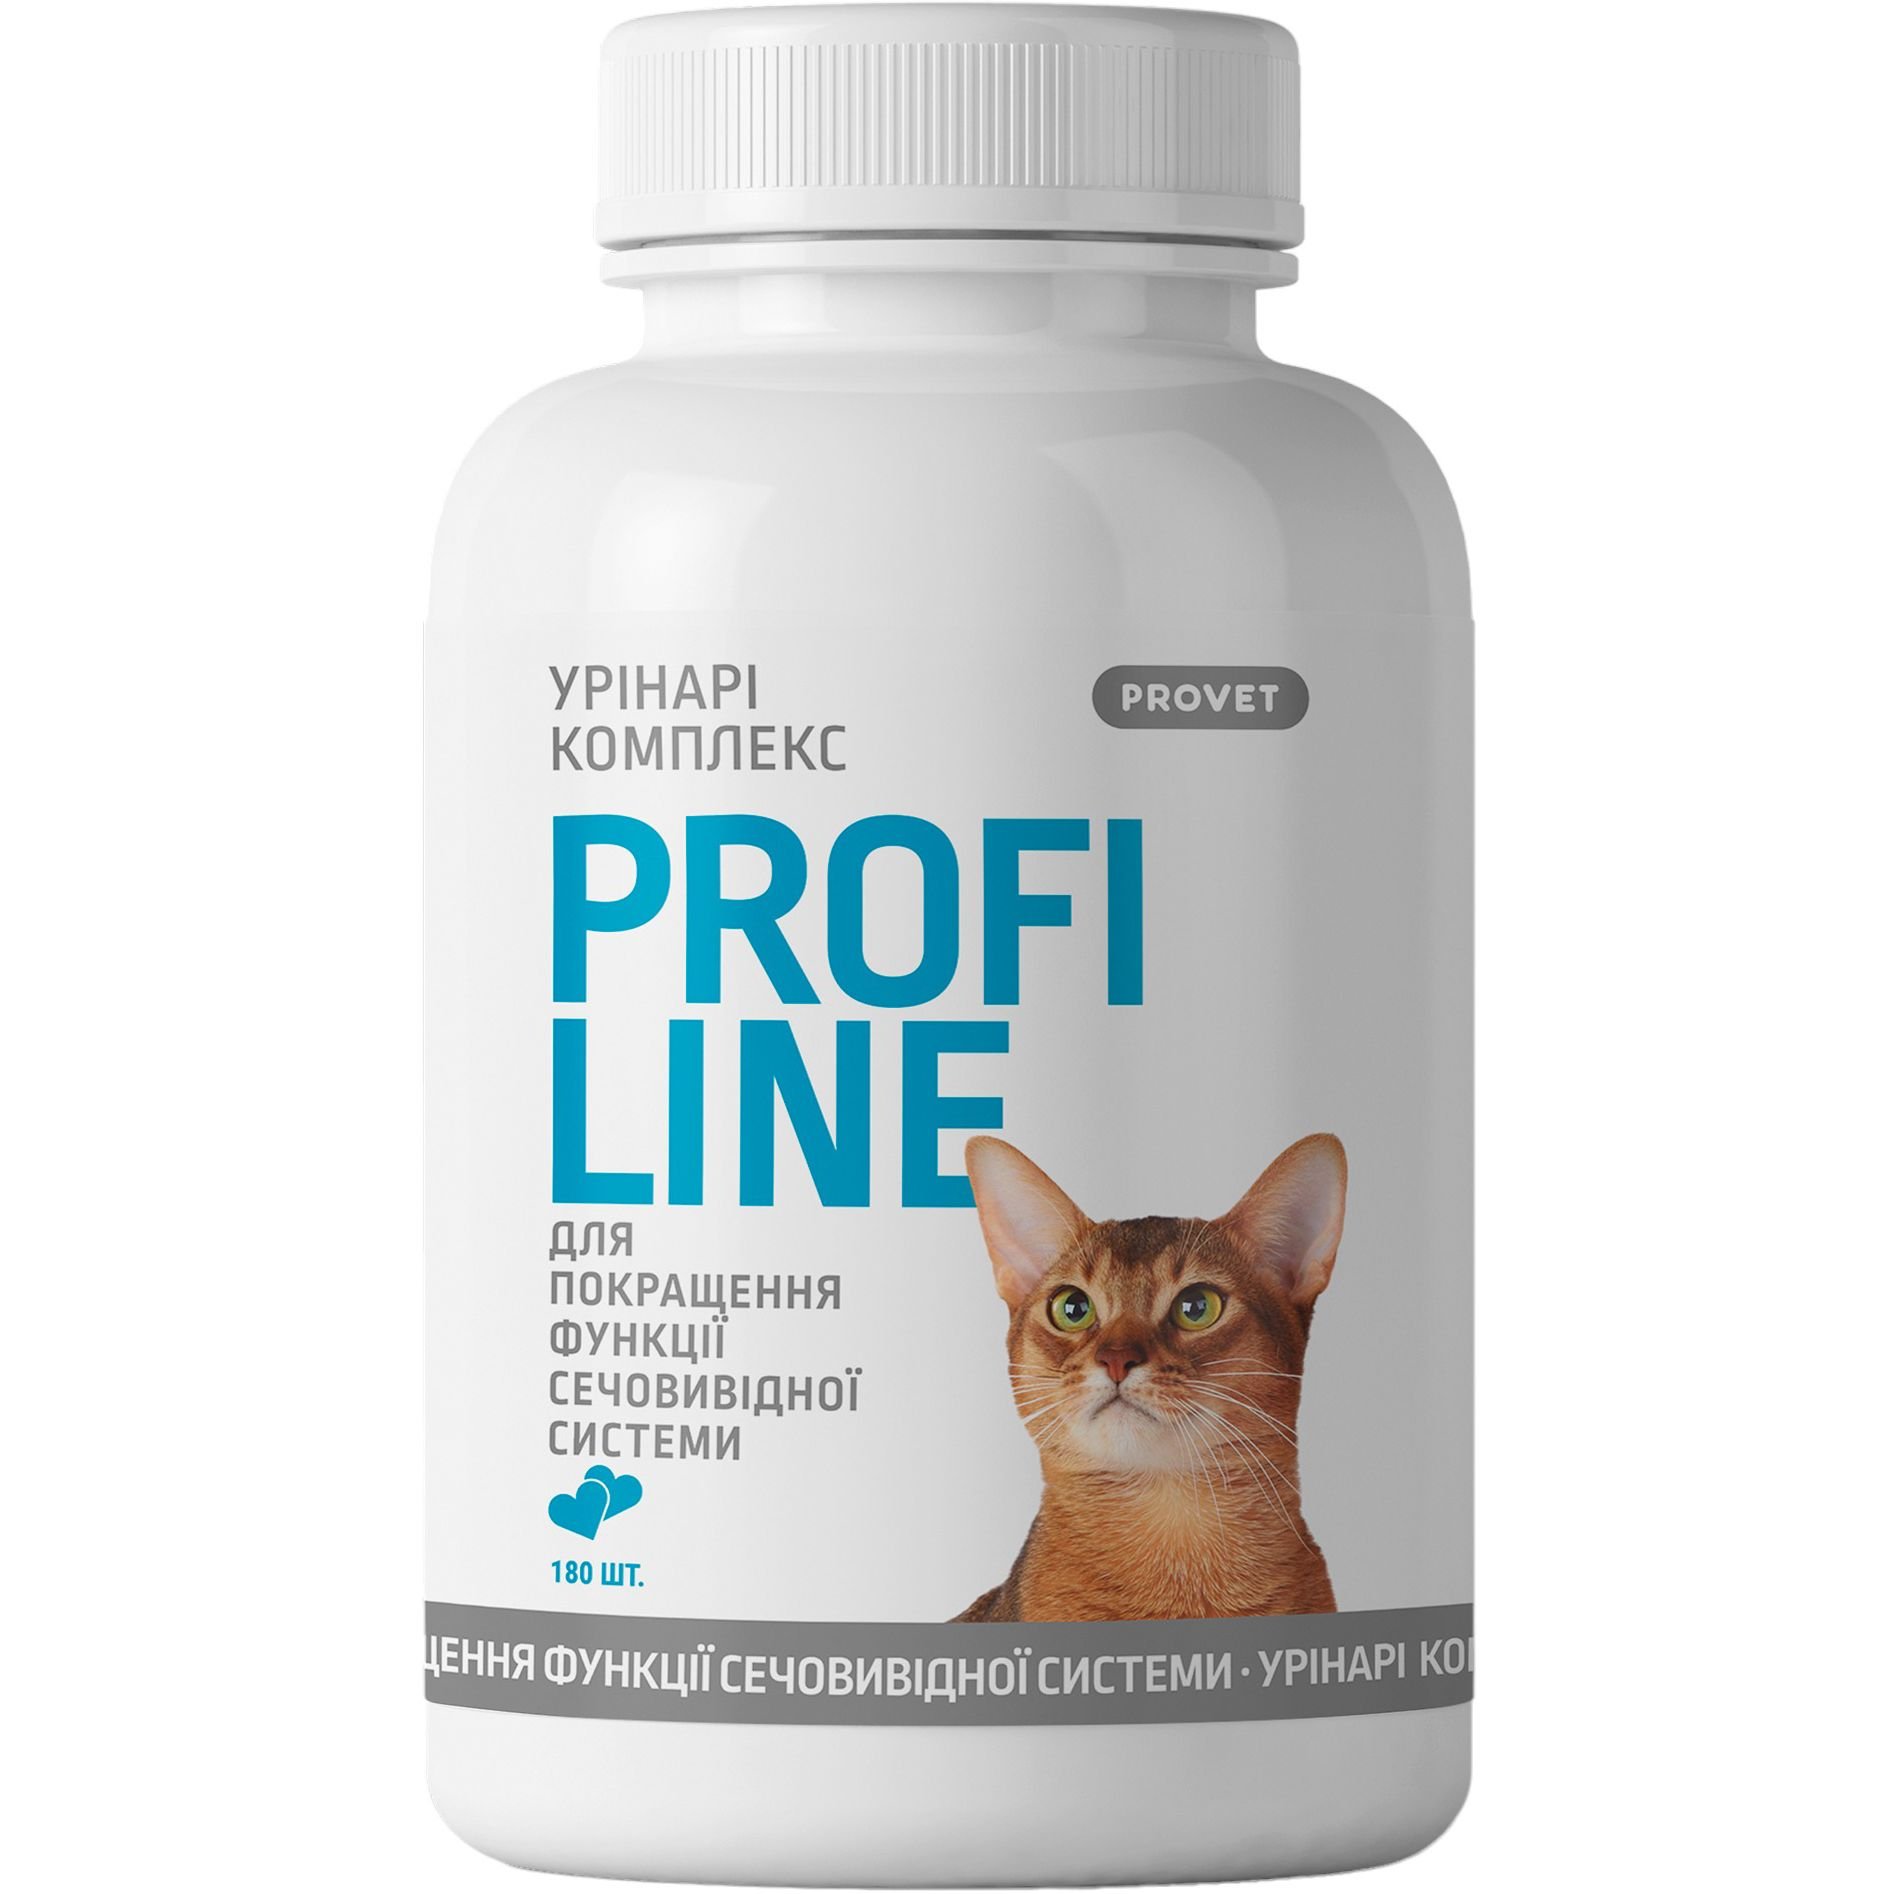 Фото - Лекарства и витамины ProVET Вітаміни для котів  Profiline Урінарі комплекс для покращення функці 